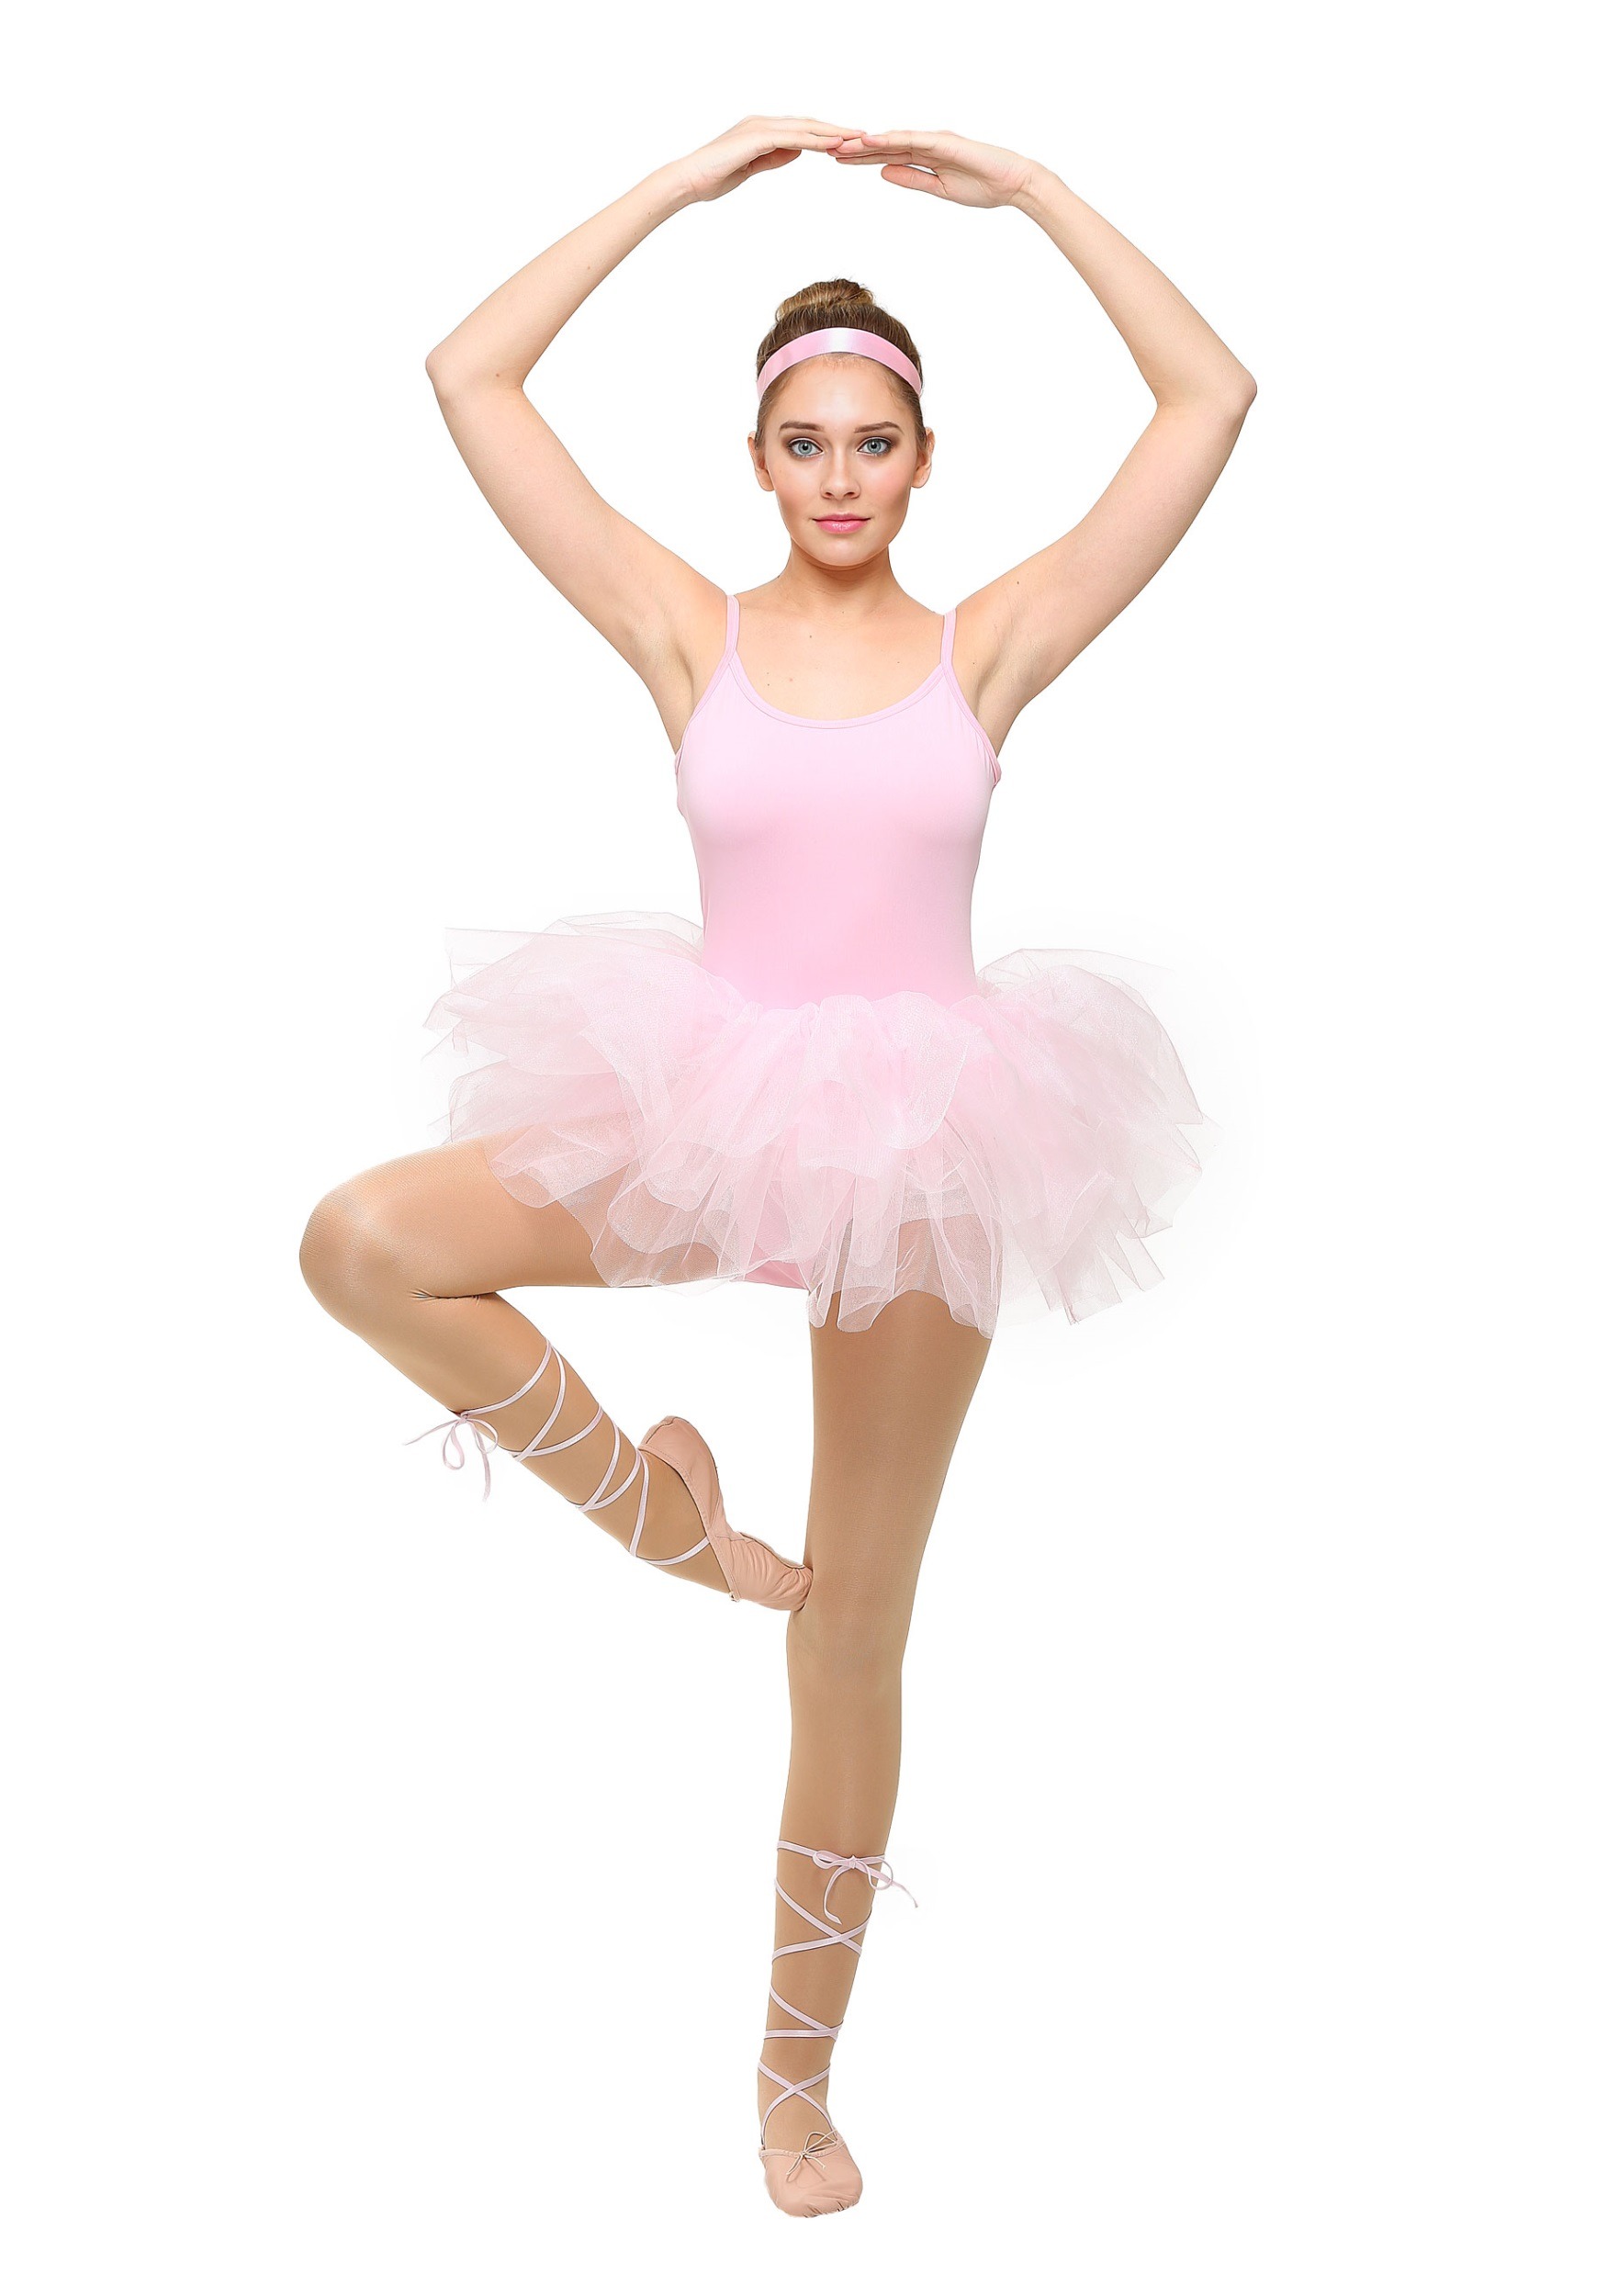 Ballerina photo